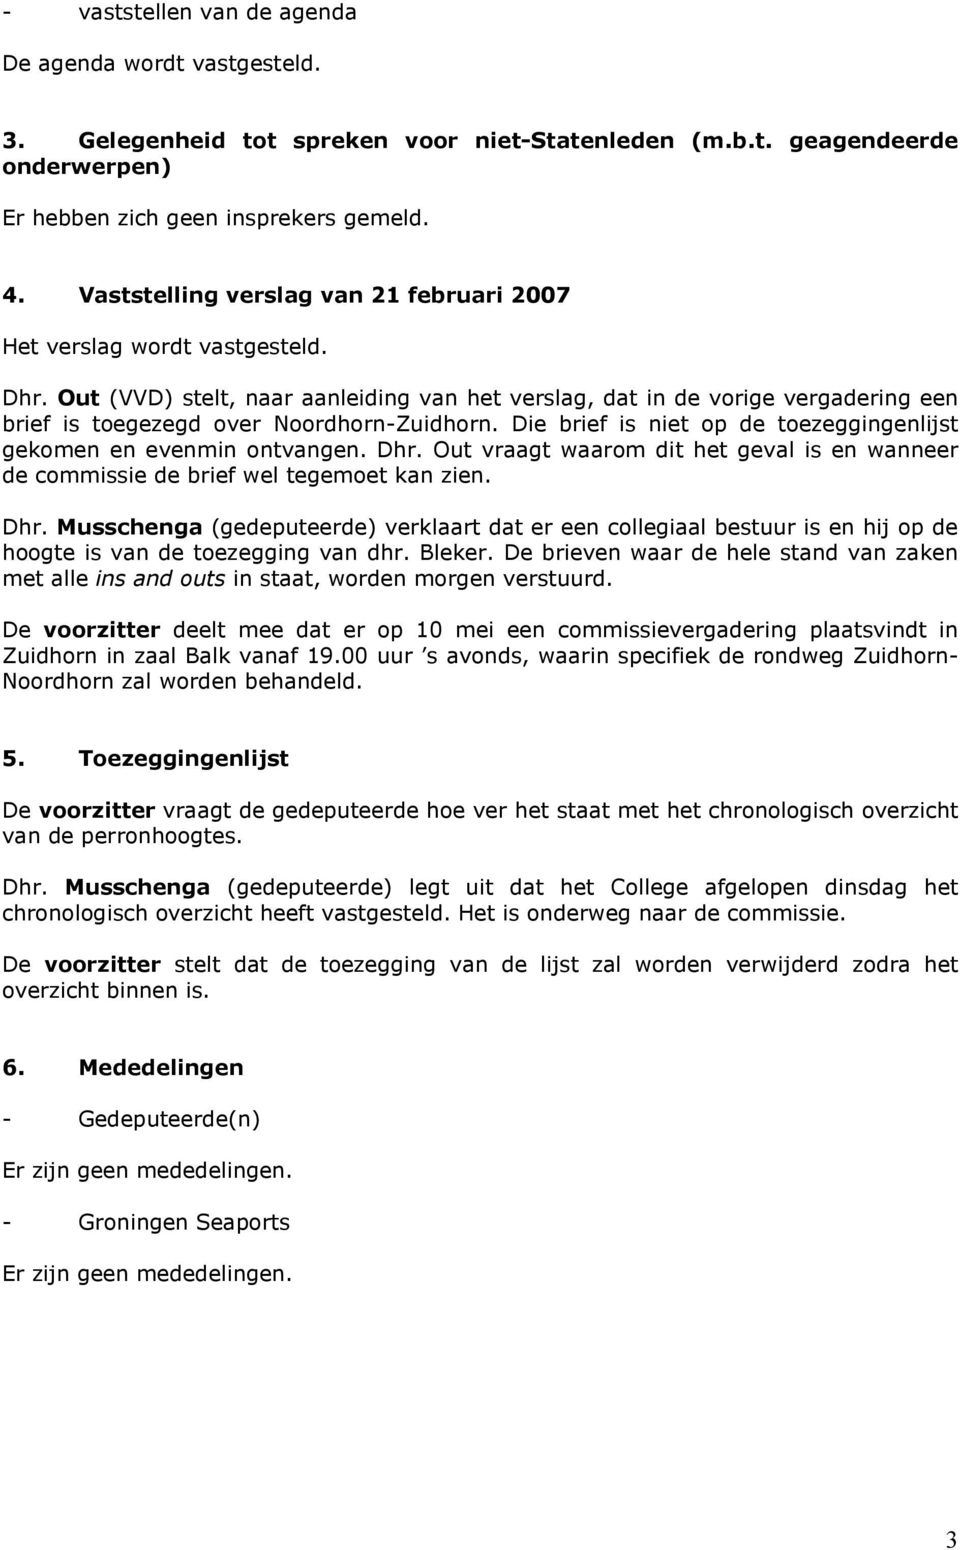 Out (VVD) stelt, naar aanleiding van het verslag, dat in de vorige vergadering een brief is toegezegd over Noordhorn-Zuidhorn. Die brief is niet op de toezeggingenlijst gekomen en evenmin ontvangen.